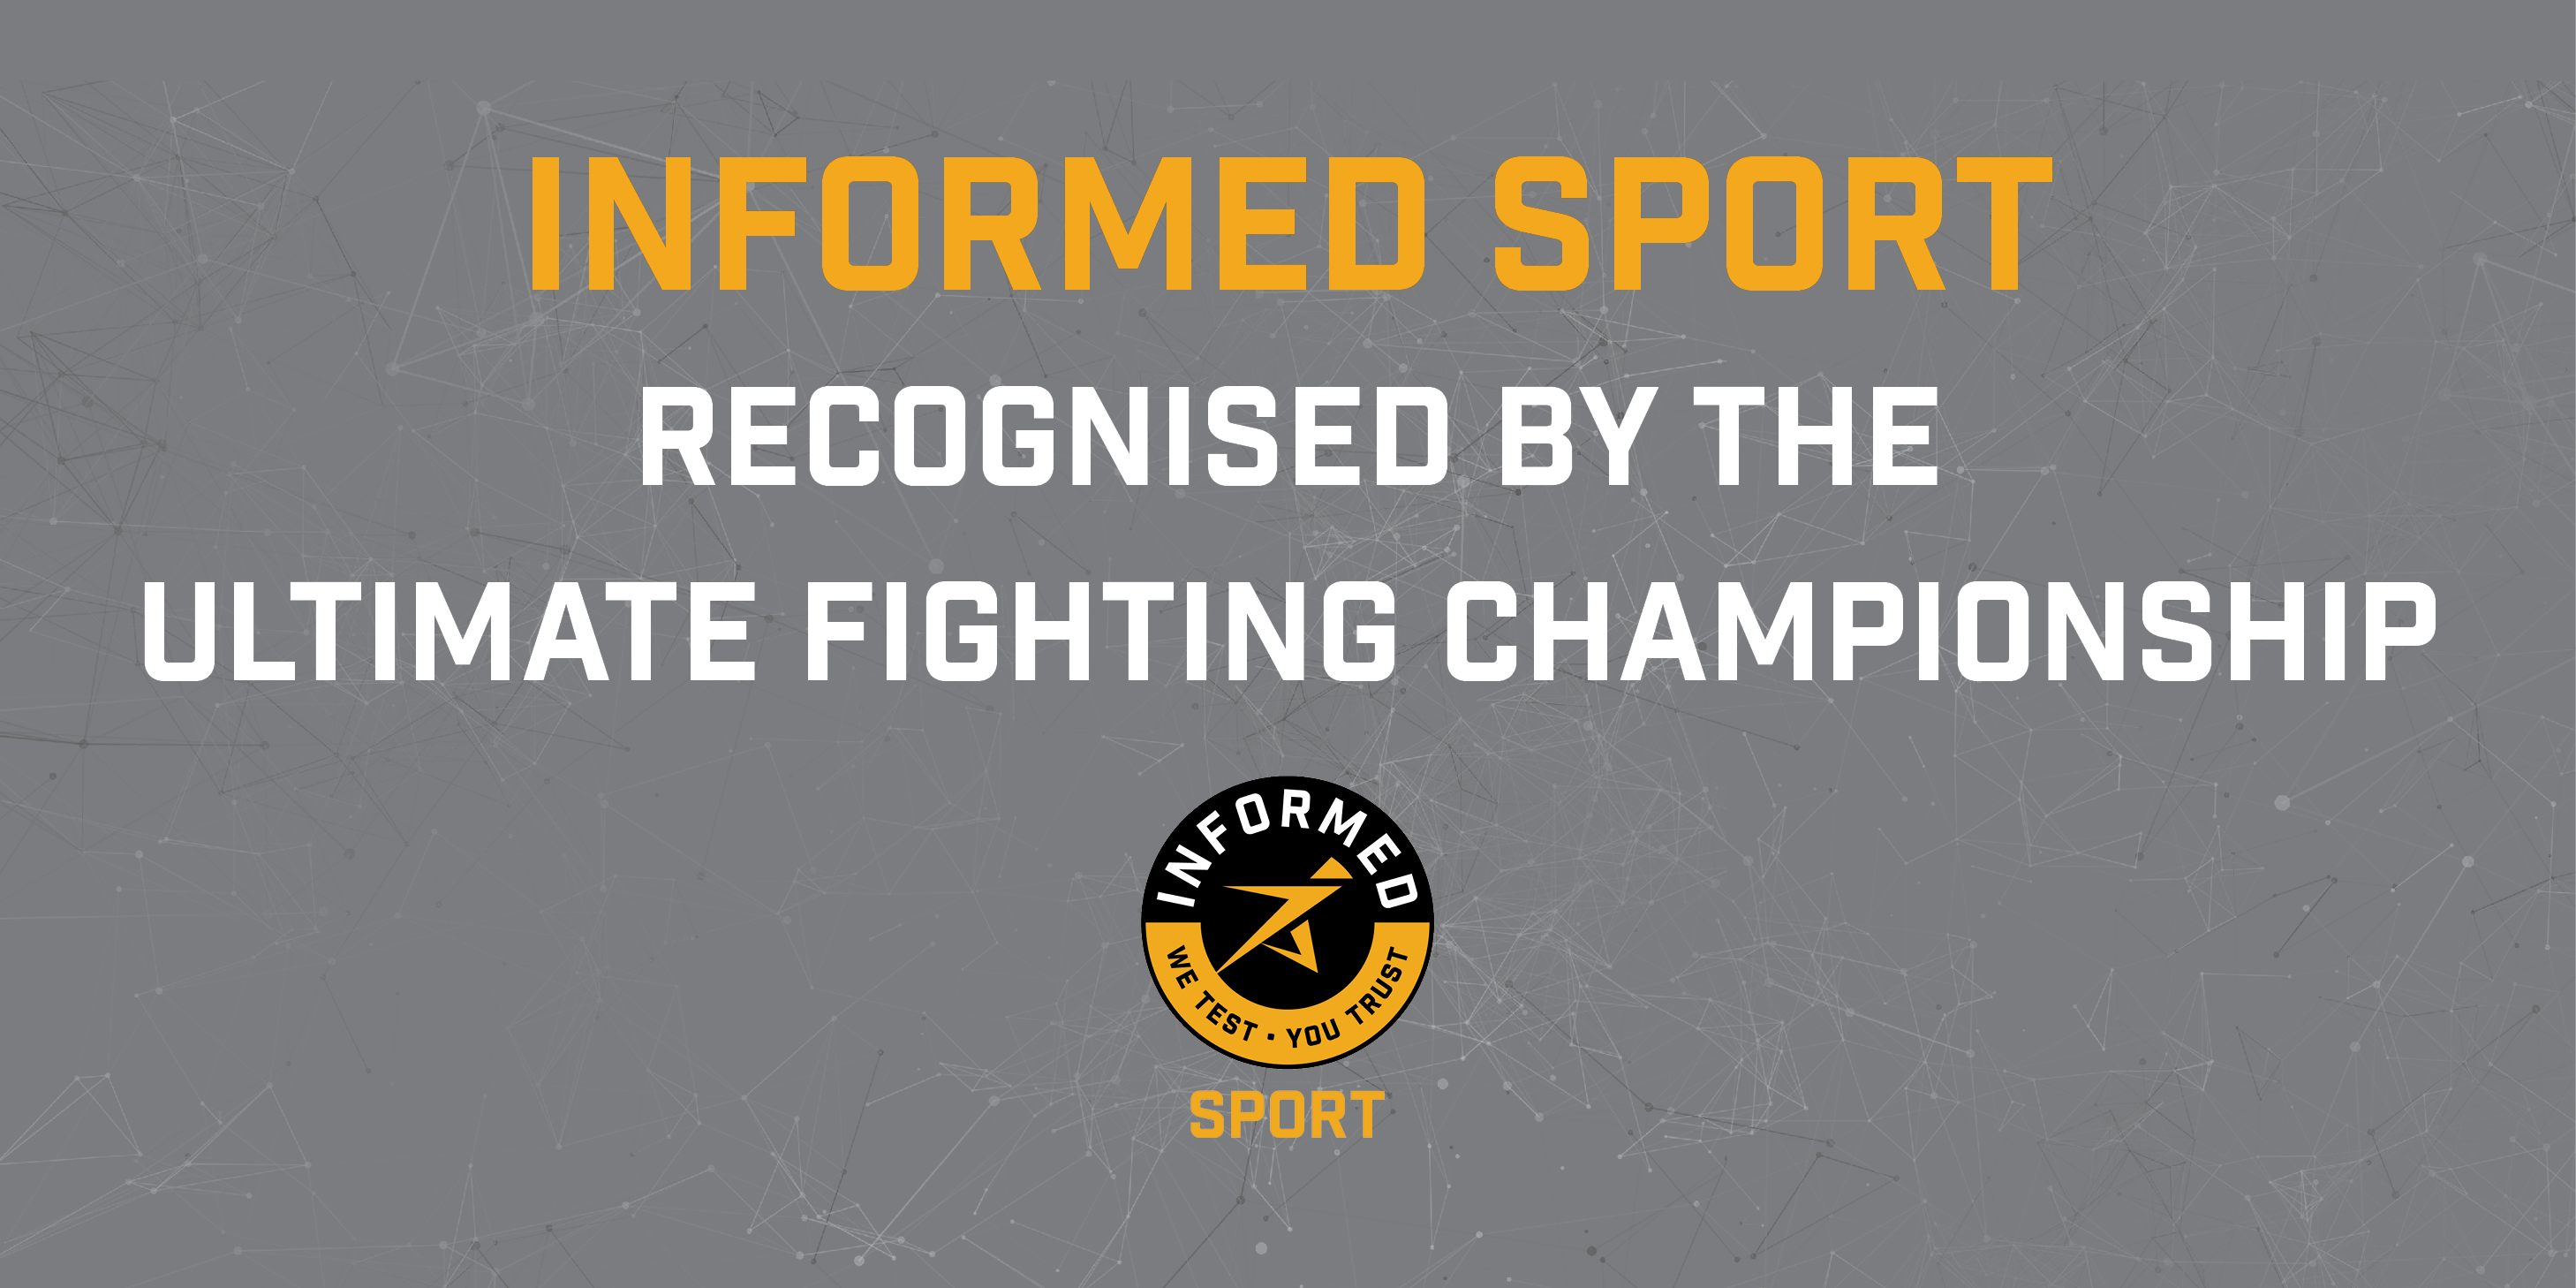 UFC Informed Sport